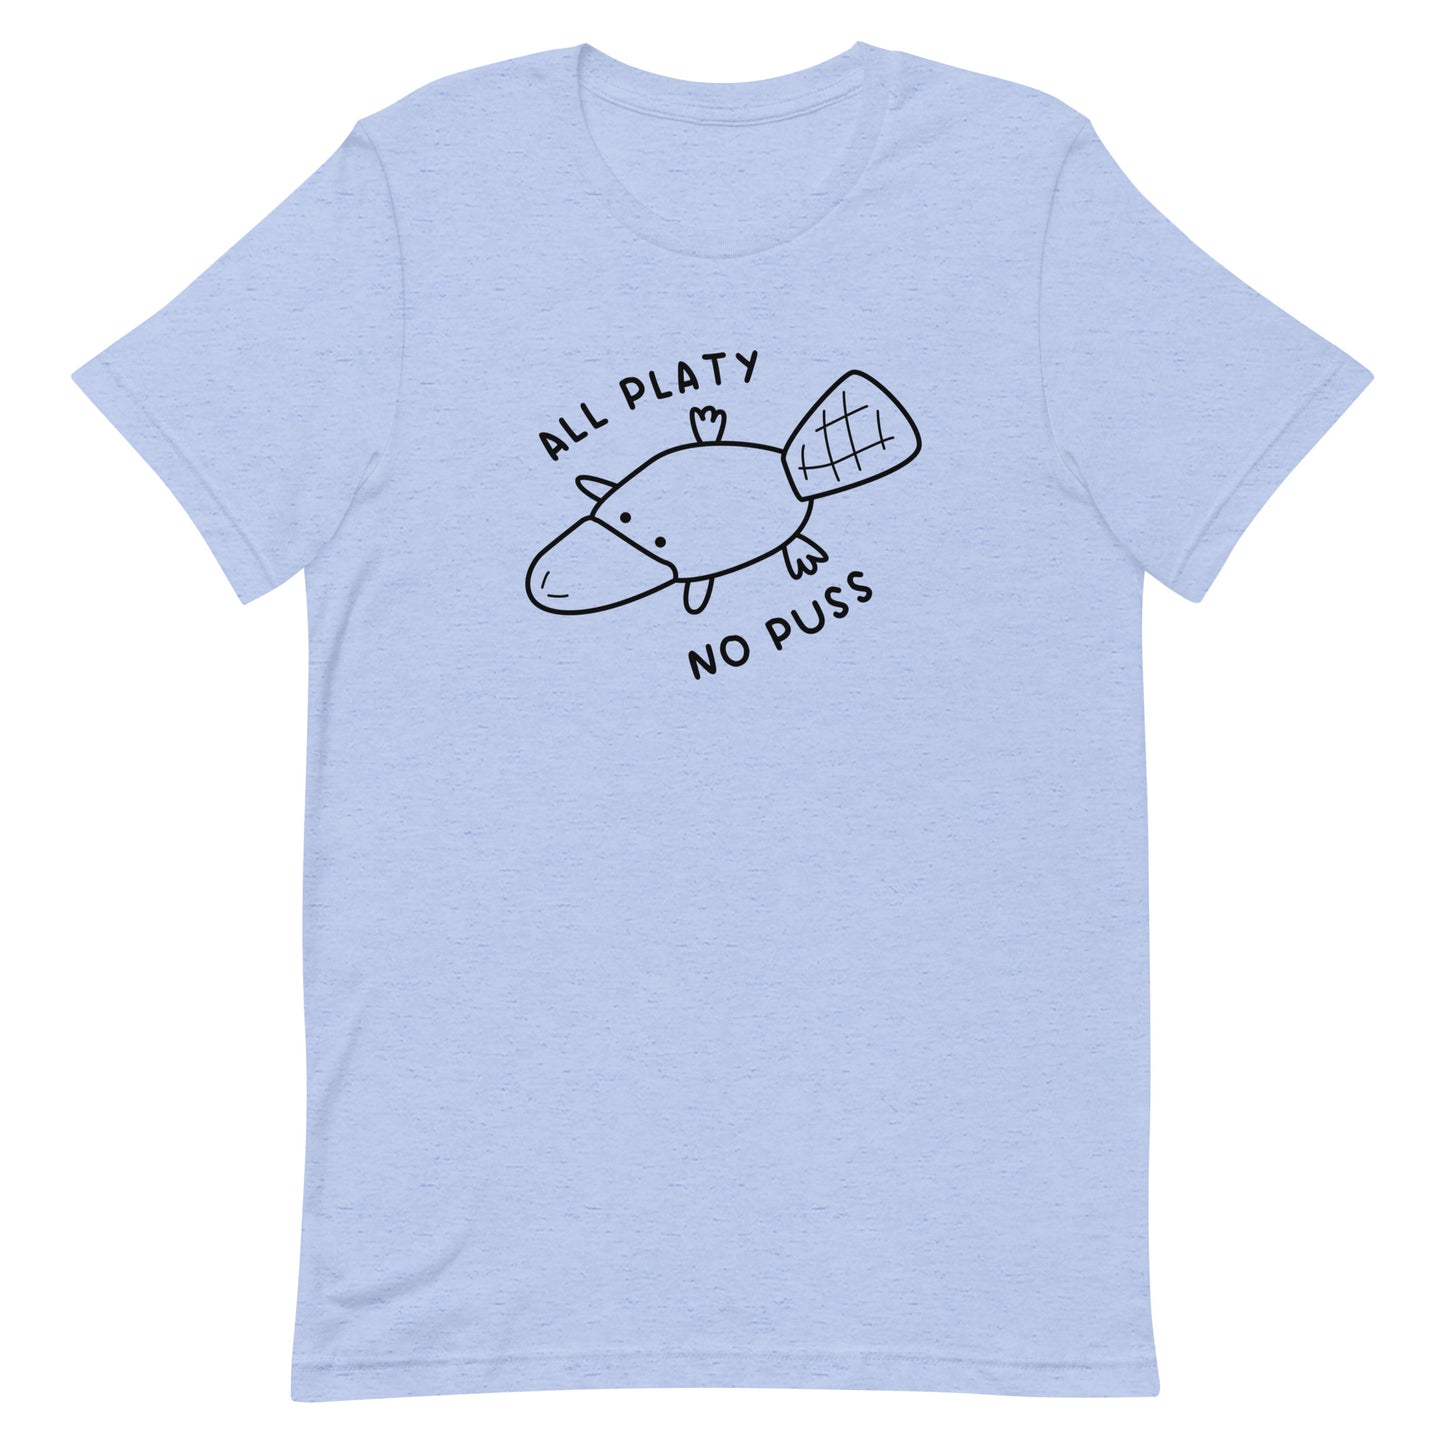 All Platy, No Puss Unisex t-shirt